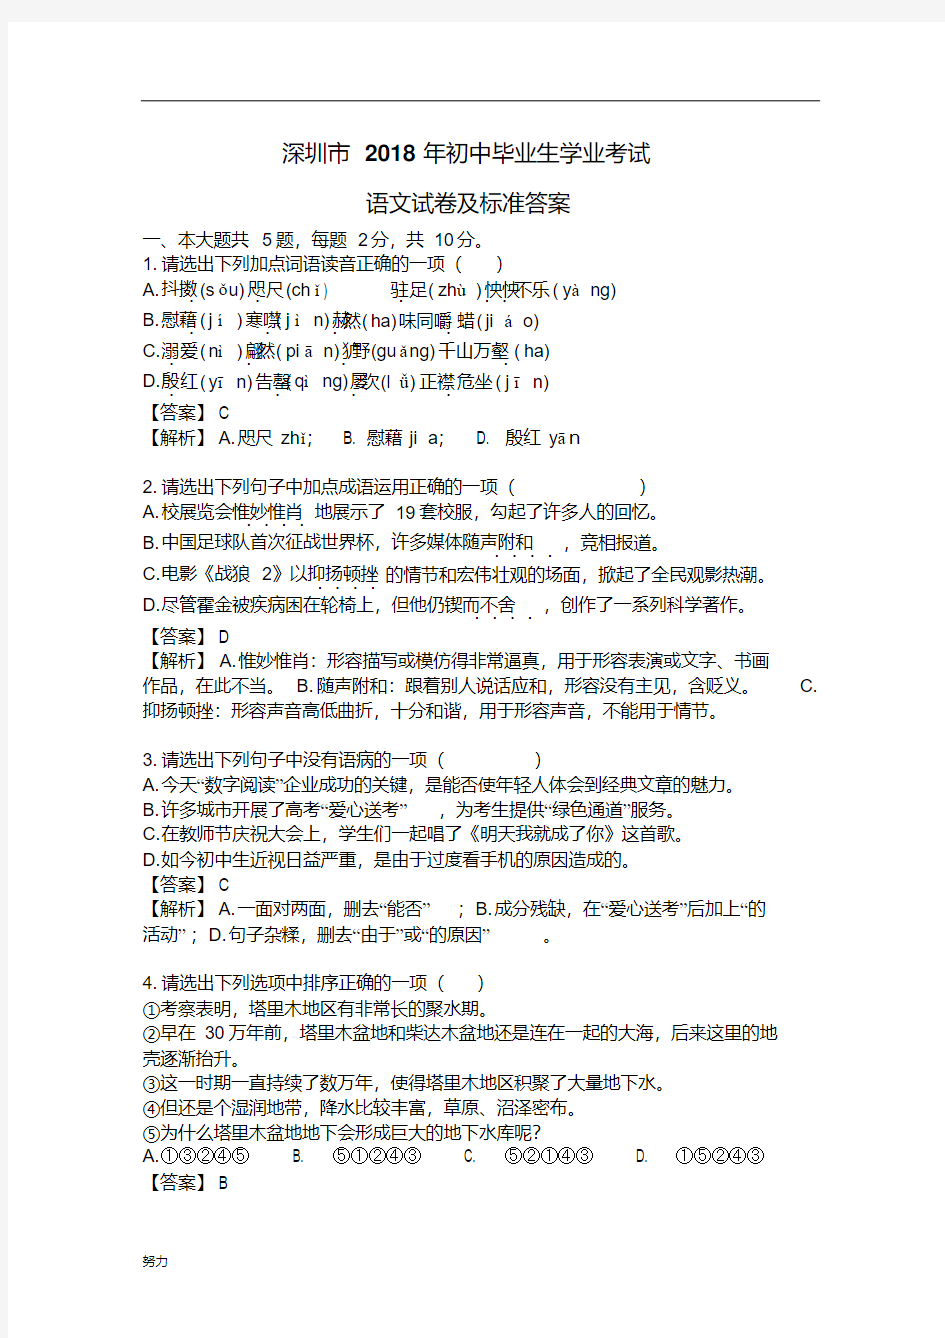 xx深圳中考语文试卷及标准答案(最新修正版)-精心整理